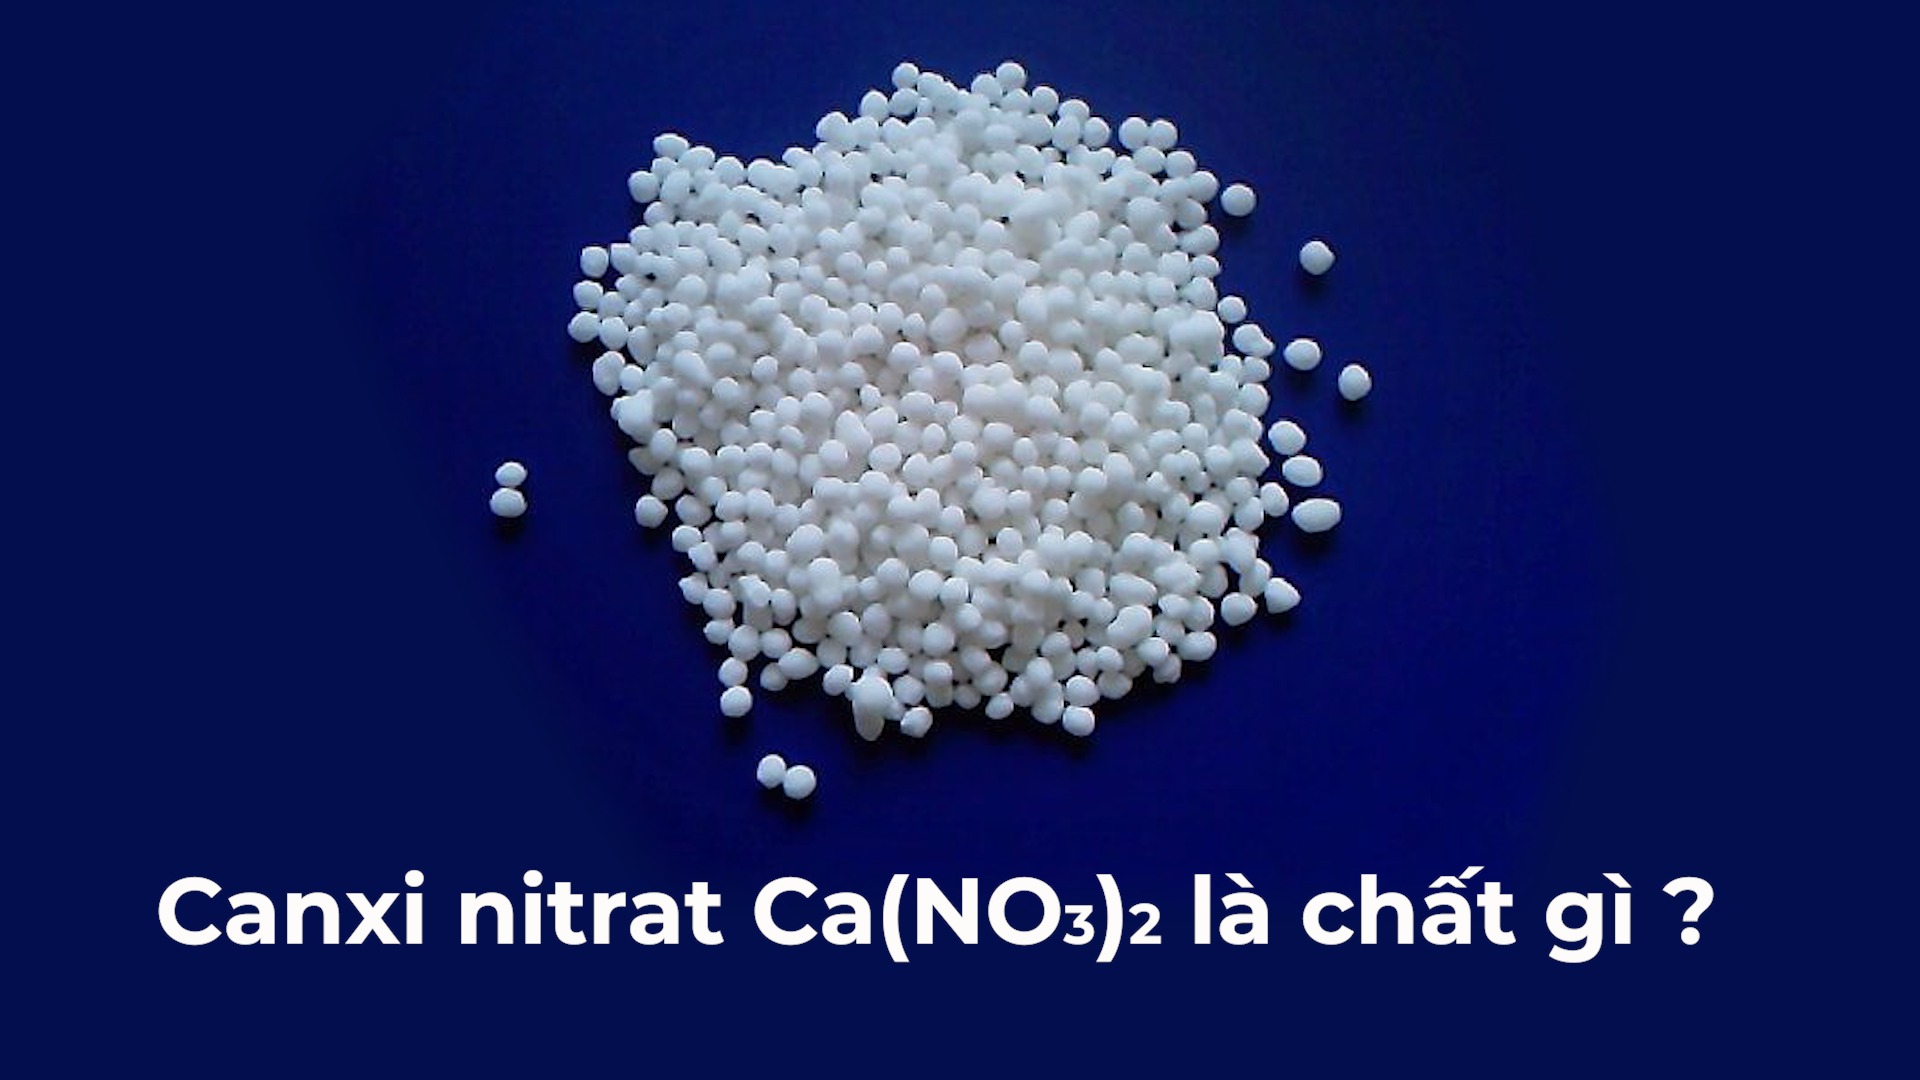  Canxi Nitrat là gì? Tính chất, điều chế và ứng dụng của Canxi Nitrat